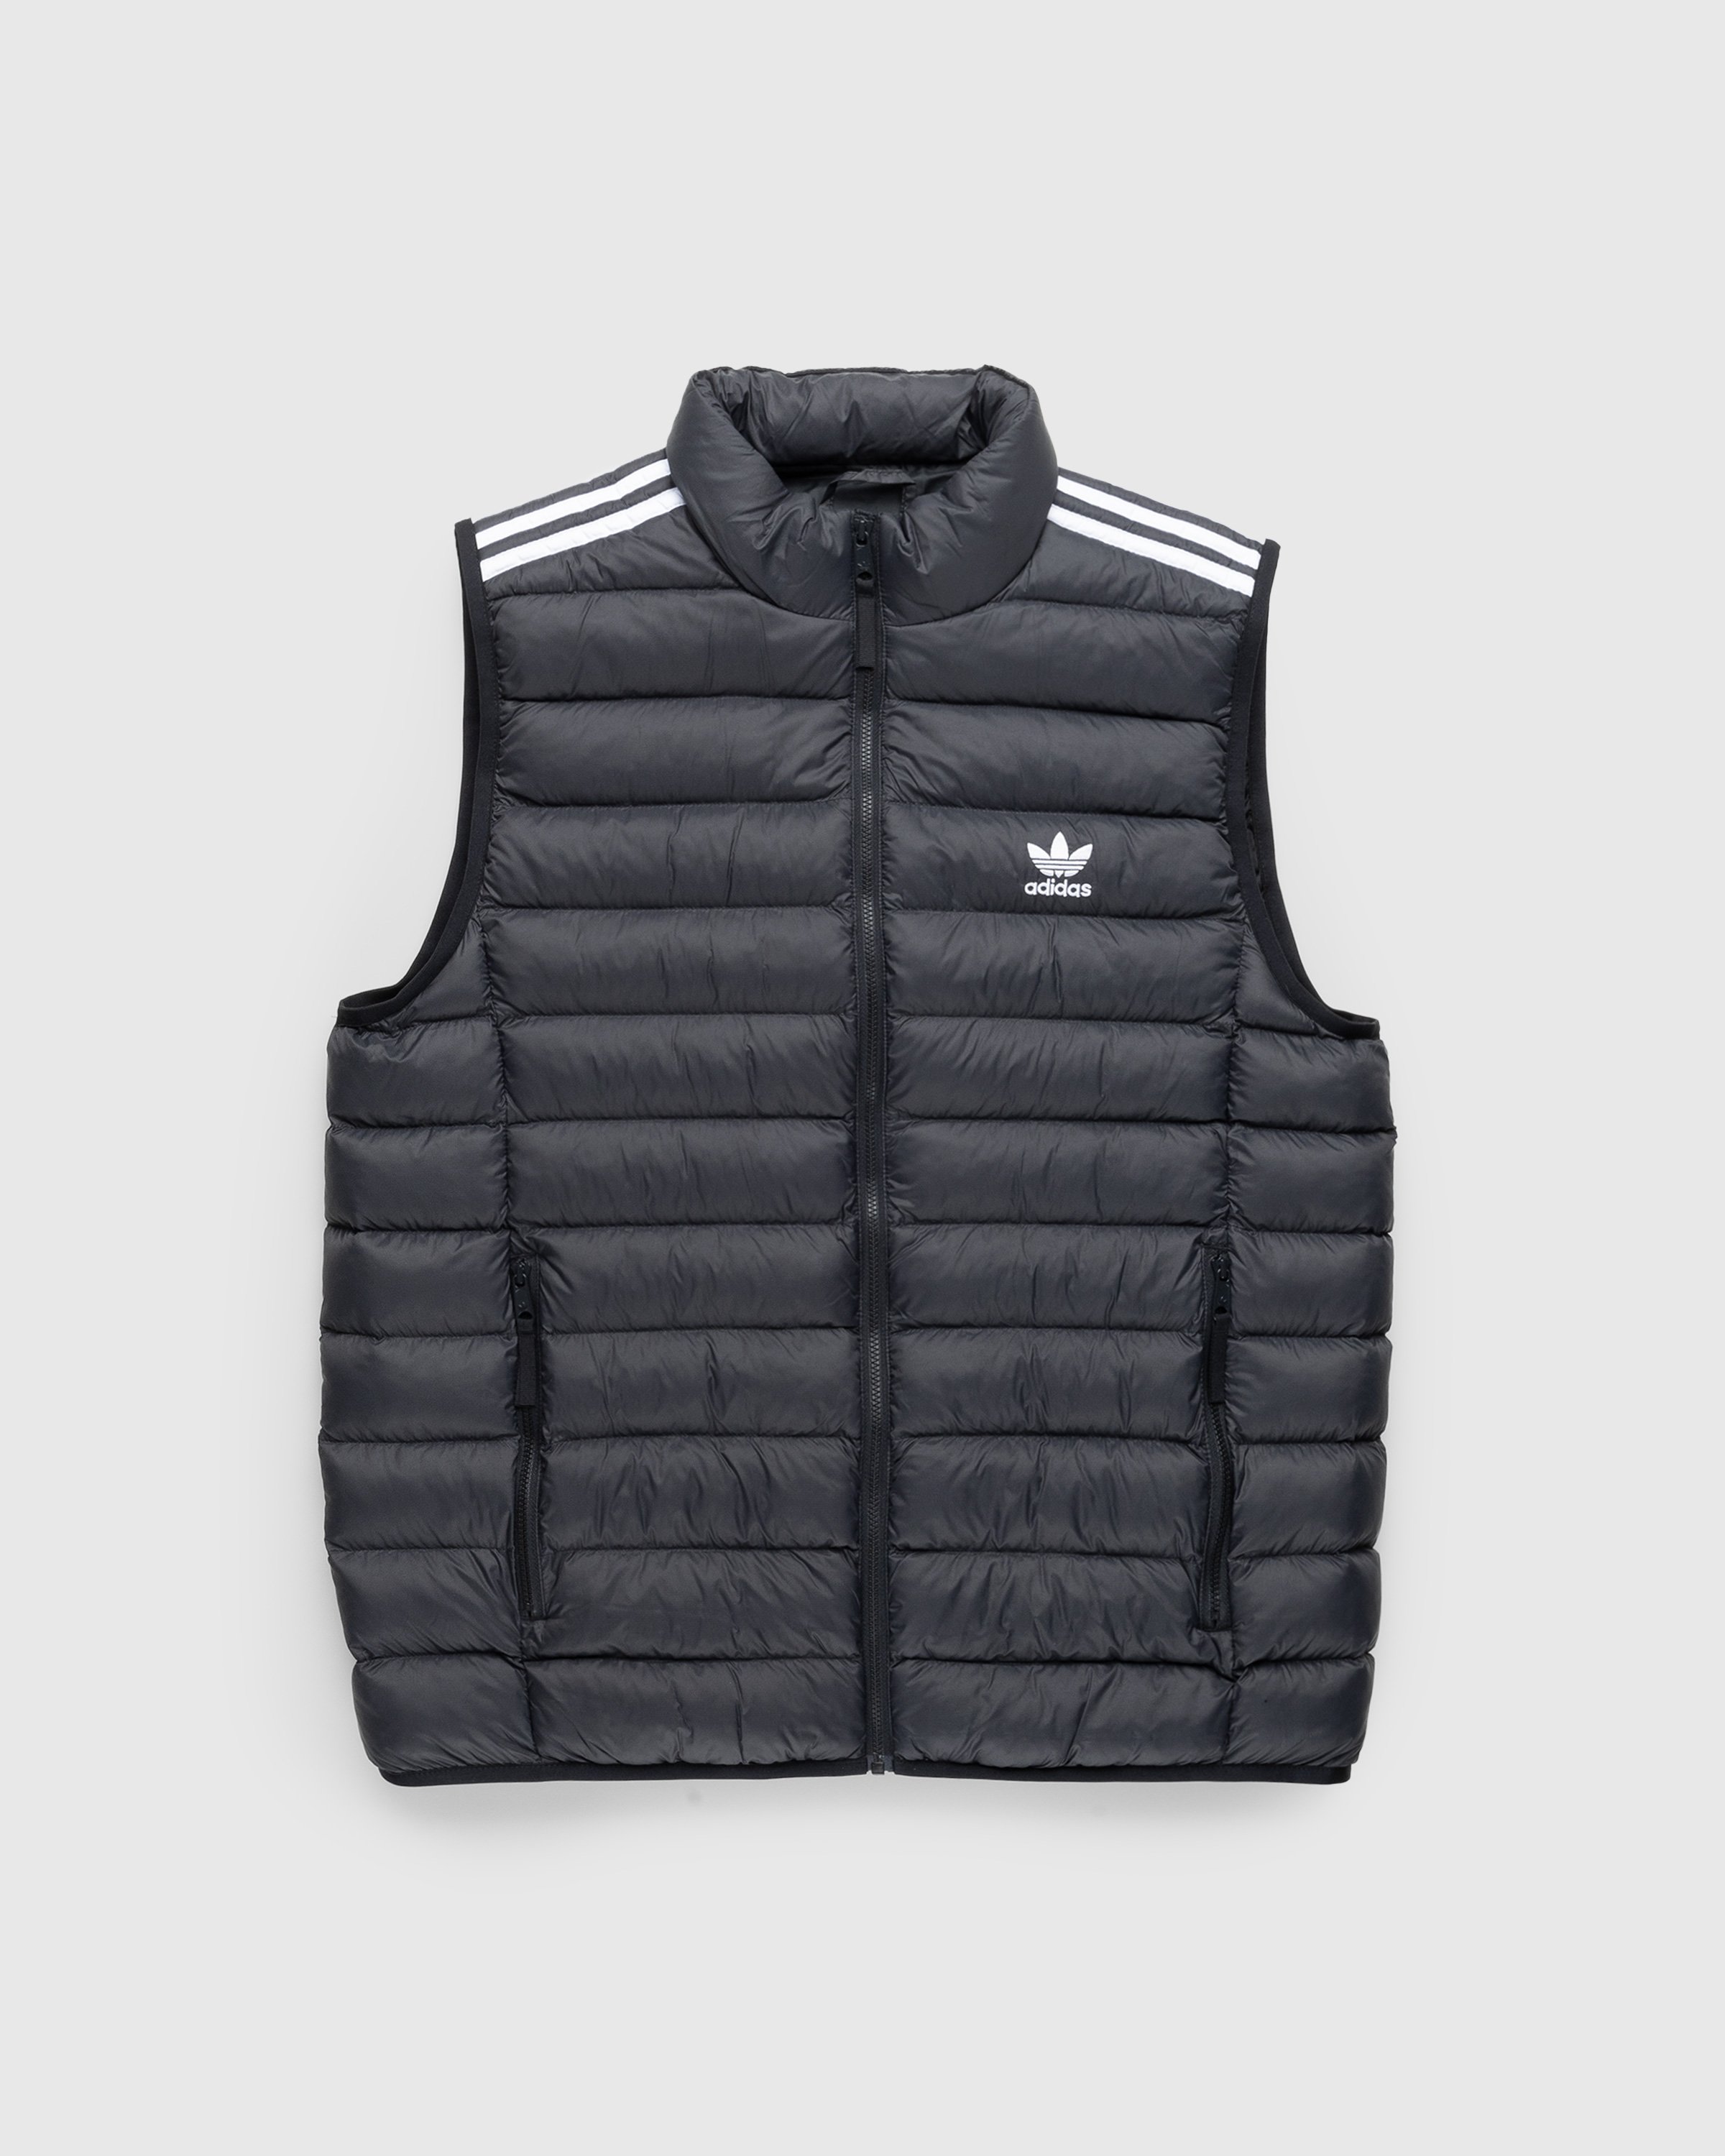 Adidas - Padded Vest Black/White - Clothing - Black - Image 1